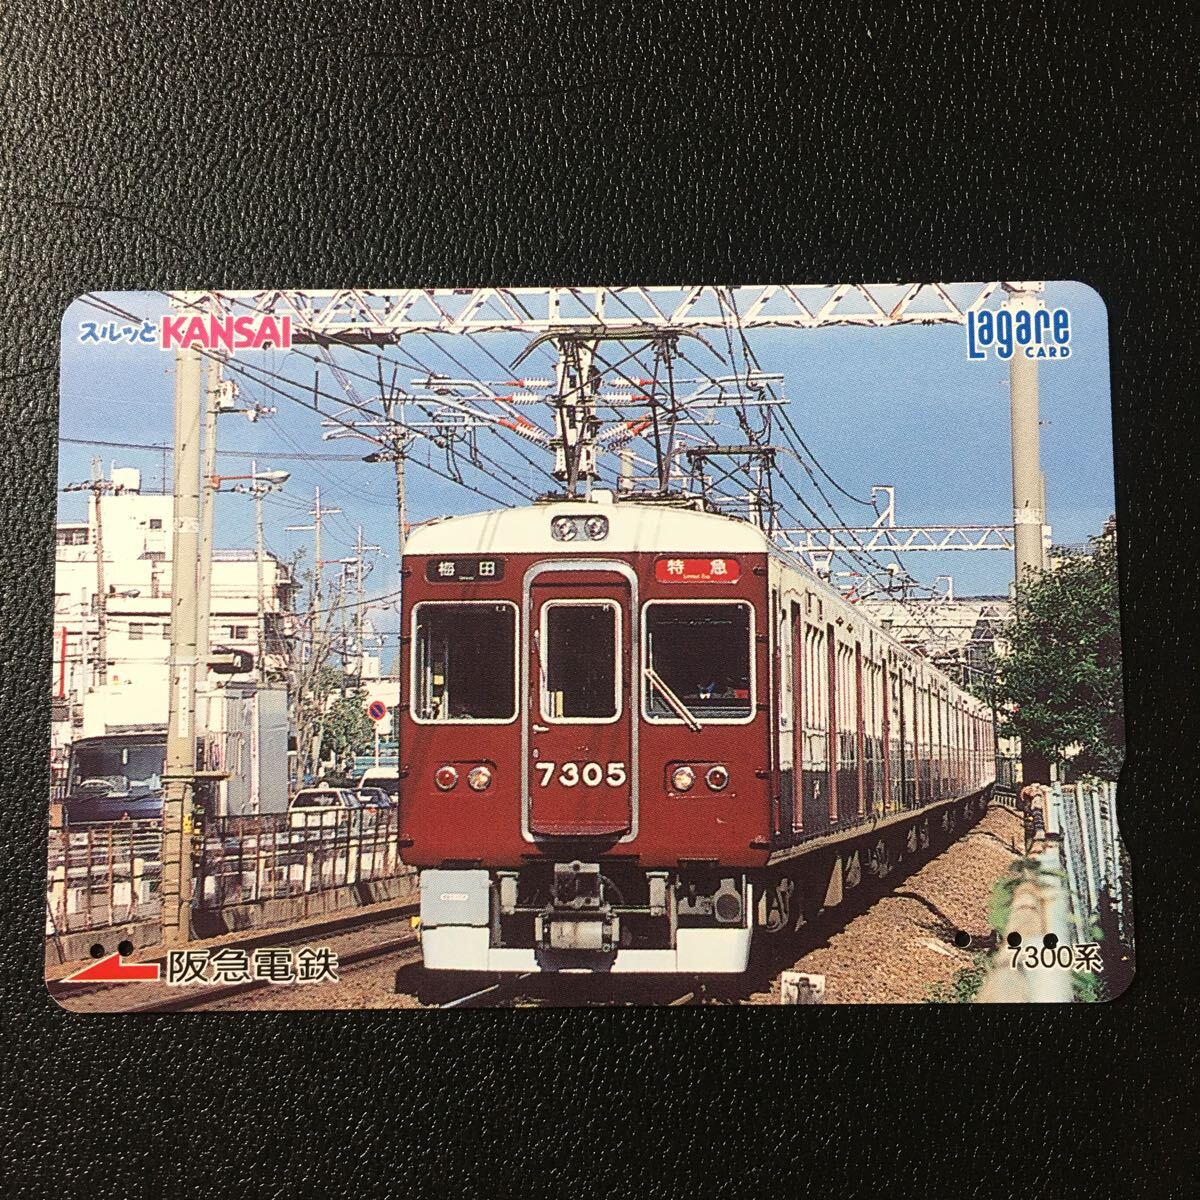 2002年11月25日発売柄ー「7300系」ー阪急ラガールカード(使用済スルッとKANSAI)_画像1